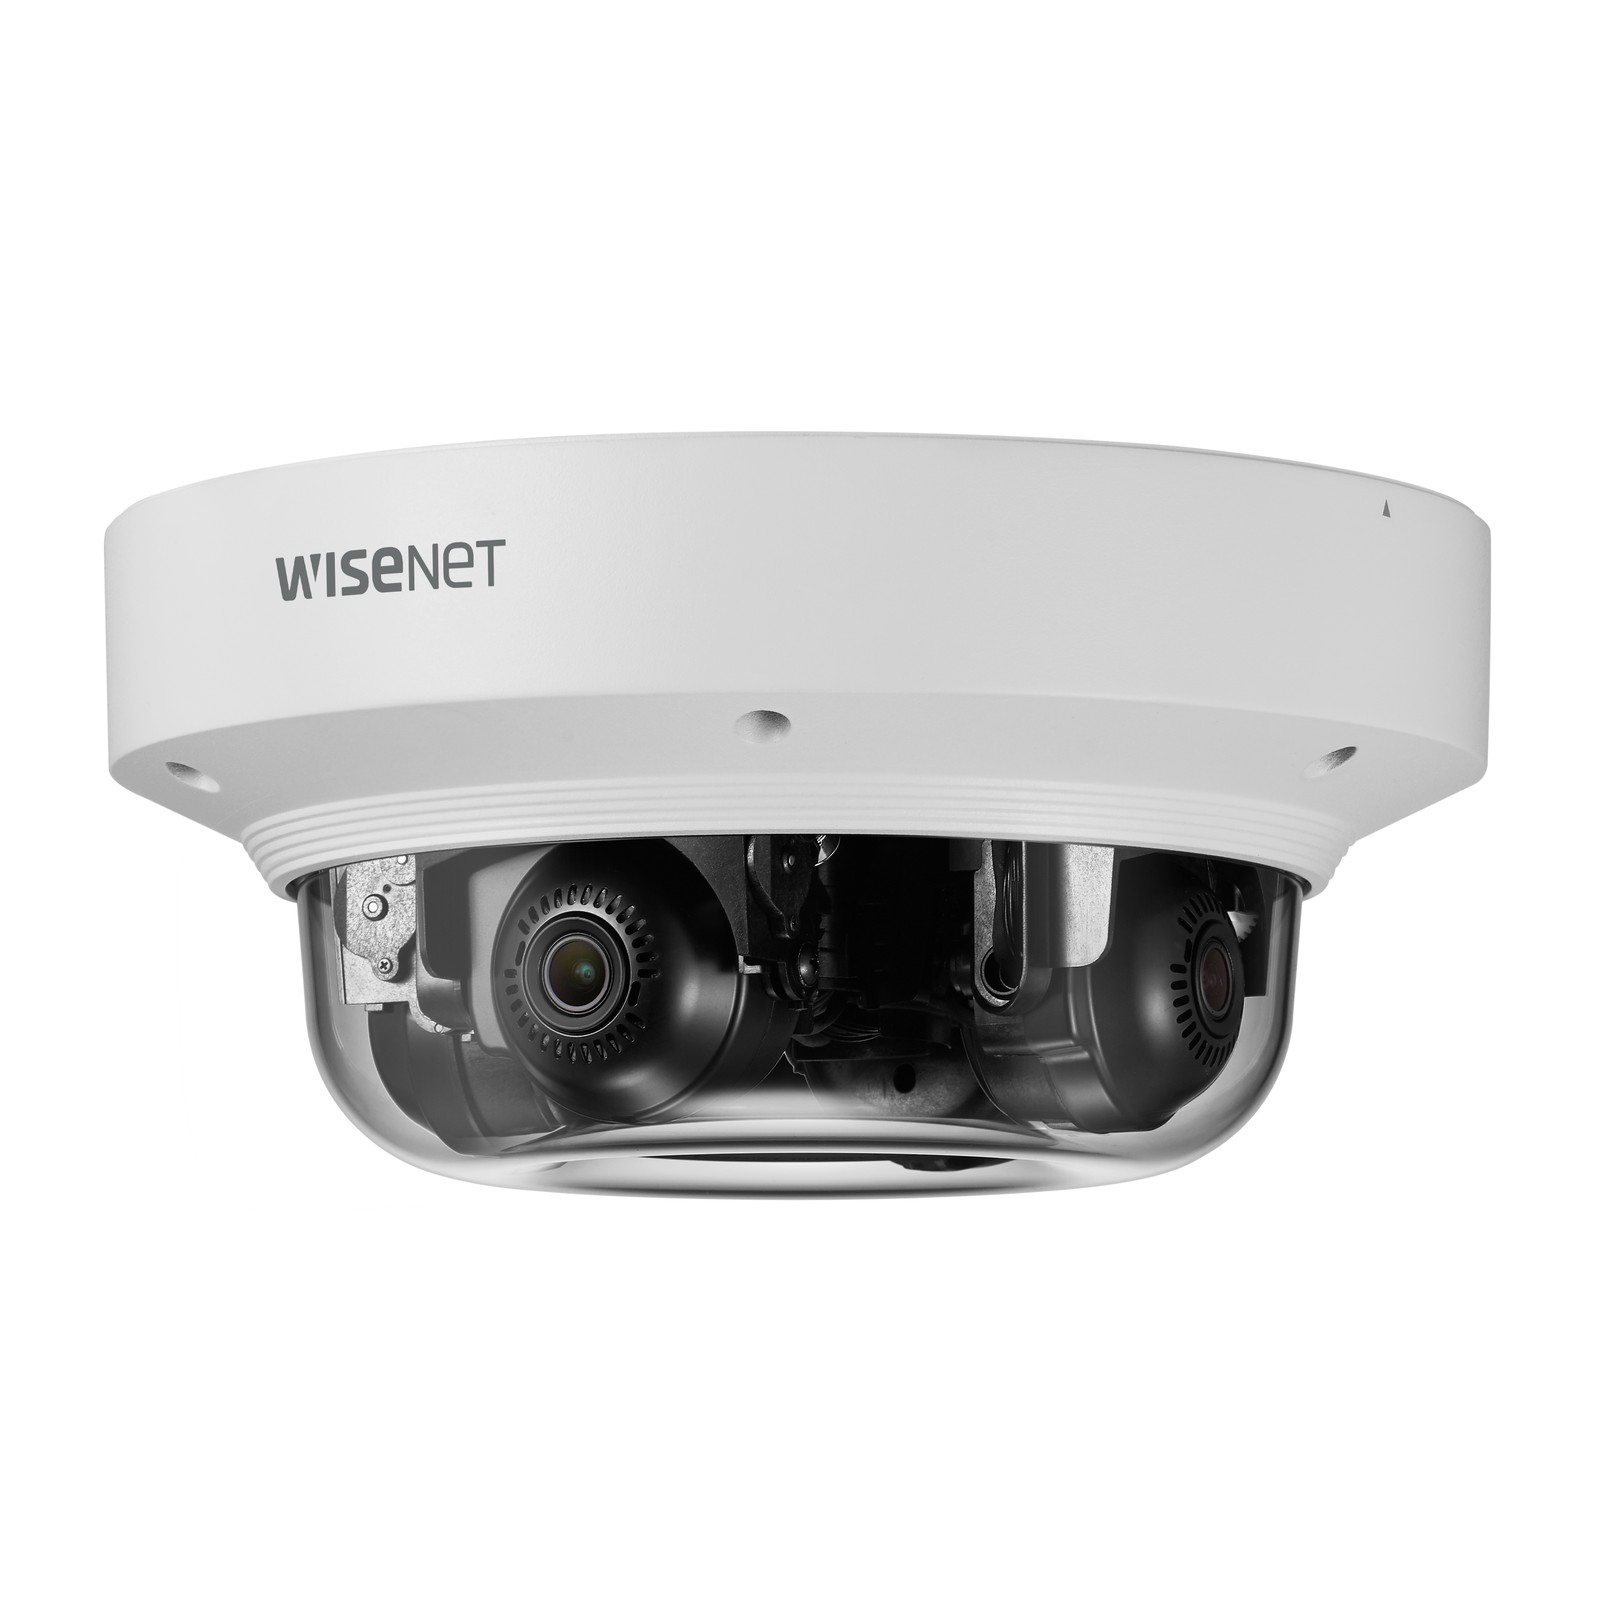 Die neuen Wisenet-Videoüberwachungskameras eignen sich besonders für die Erkennung und Verfolgung von Objekten in weiträumigen offenen Bereichen.